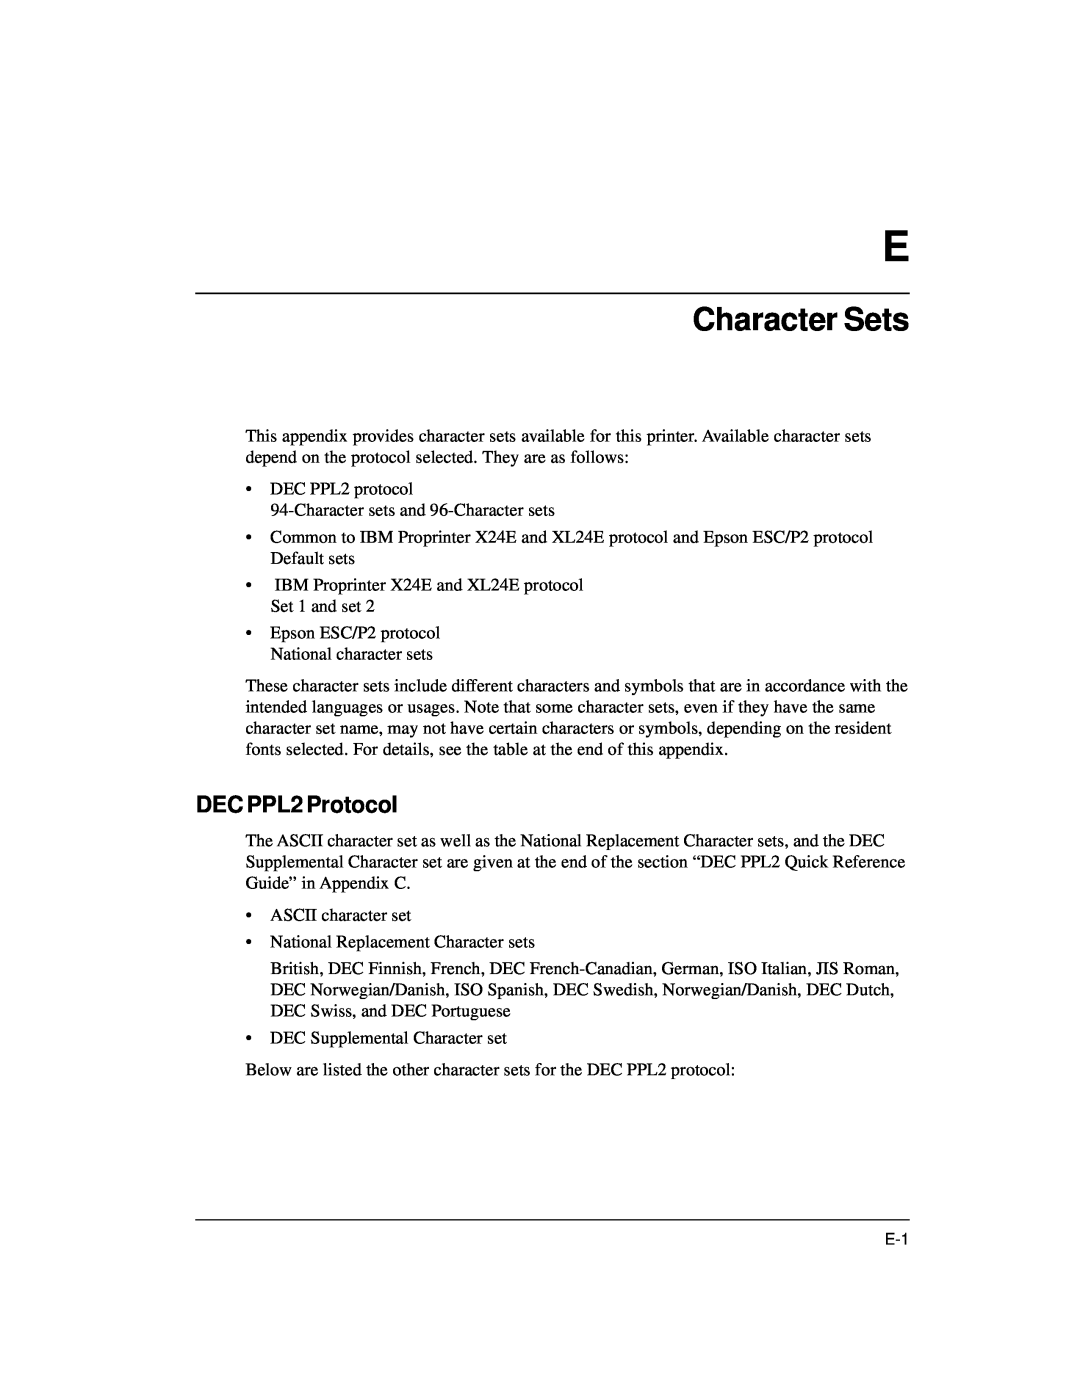 Genicom LA36 manual Character Sets, DEC PPL2 Protocol 